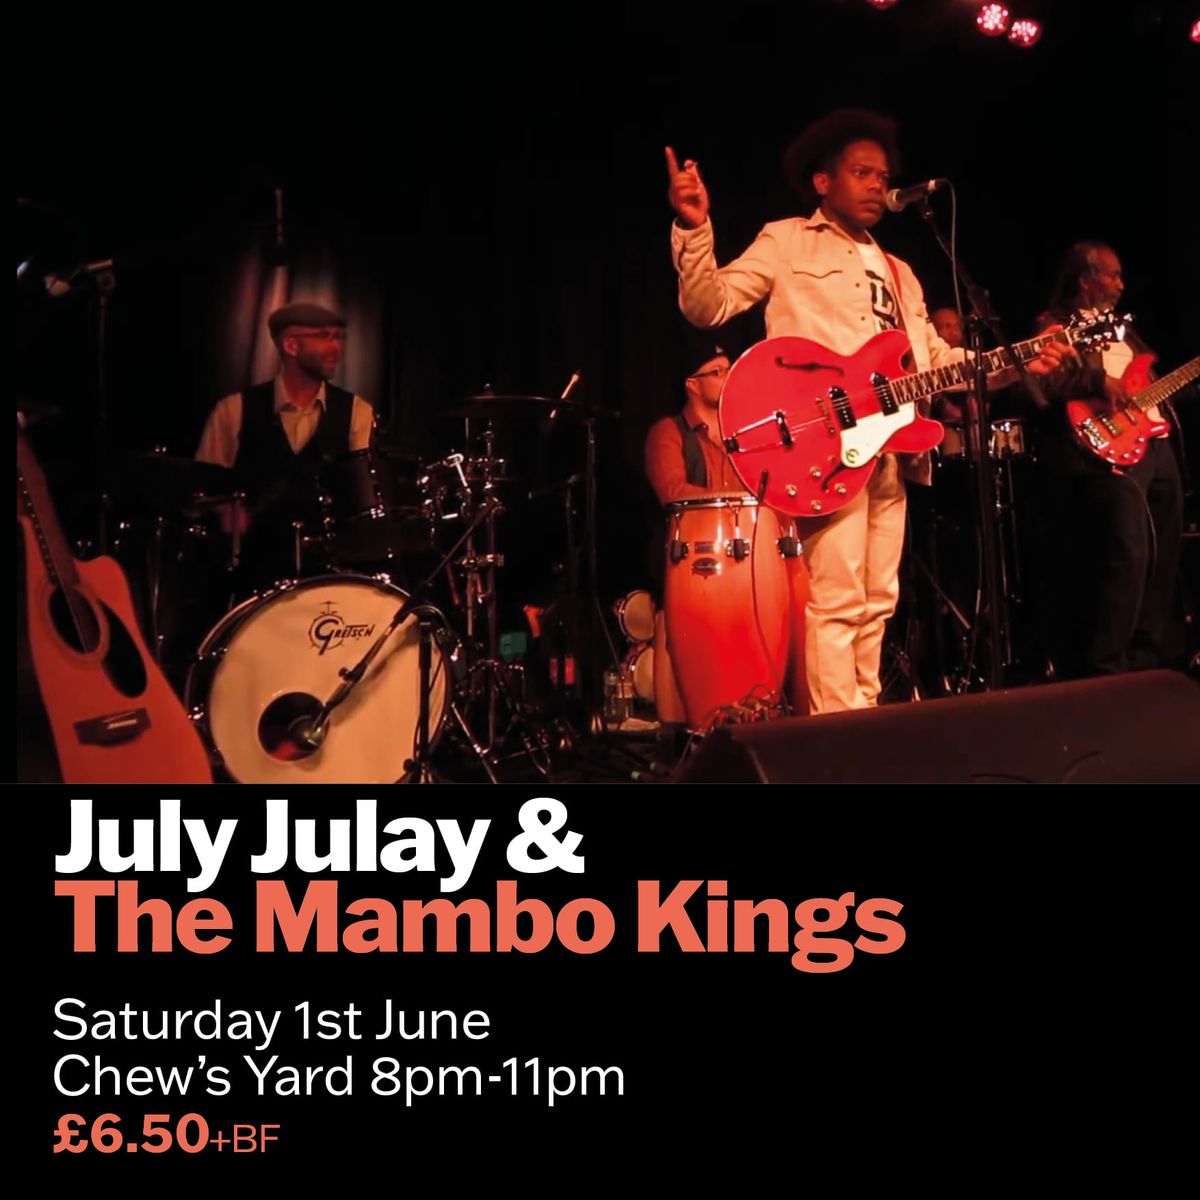 July Julay and The Mambo Kings at Chew's Yard 